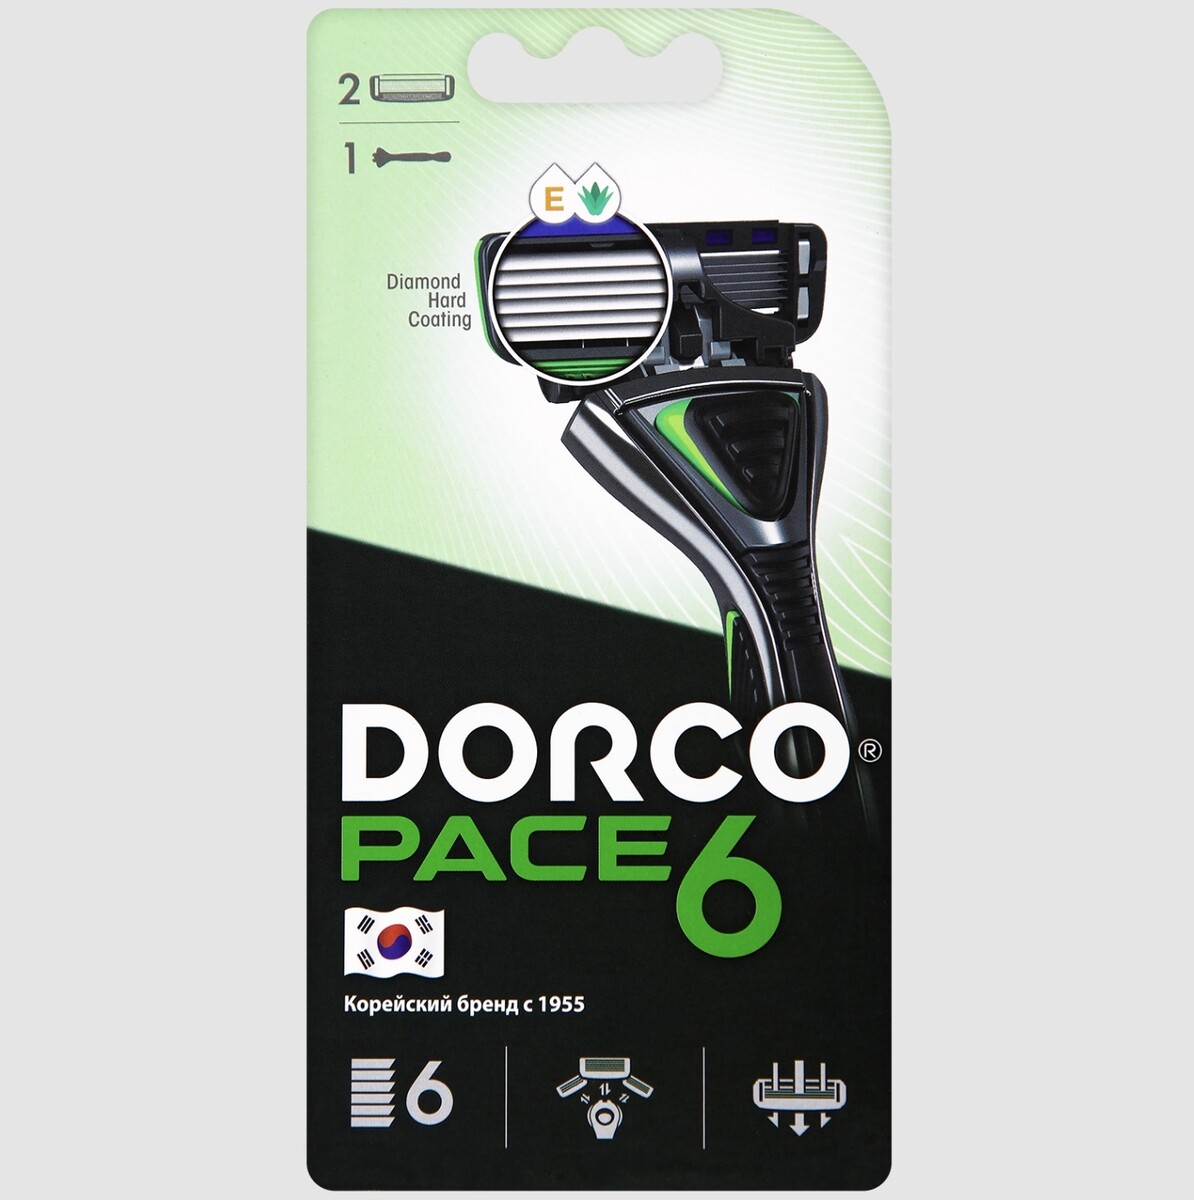 Dorco pace6 (станок+2's) система с 6лезвиями (ю.корея) станок для бритья gillette venus для женщин 2 сменные кассеты